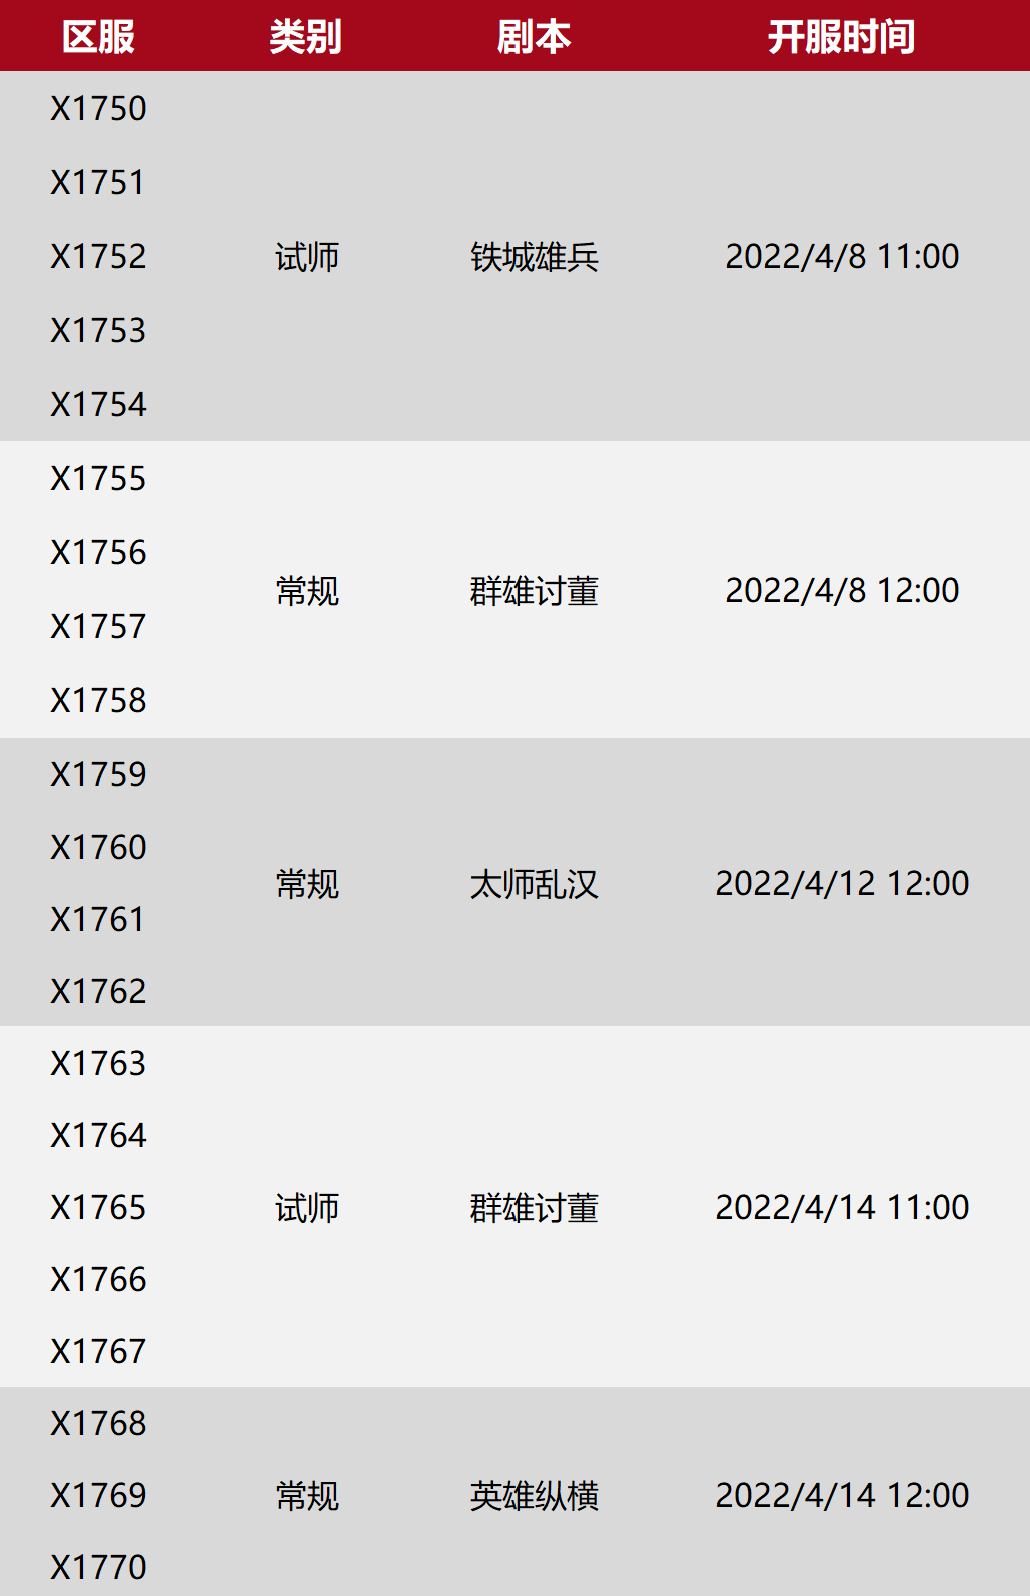 X1750-X1770局势：“烽火”&“剑指”、“紫霄宫”&“程佳豪”都要2V4！